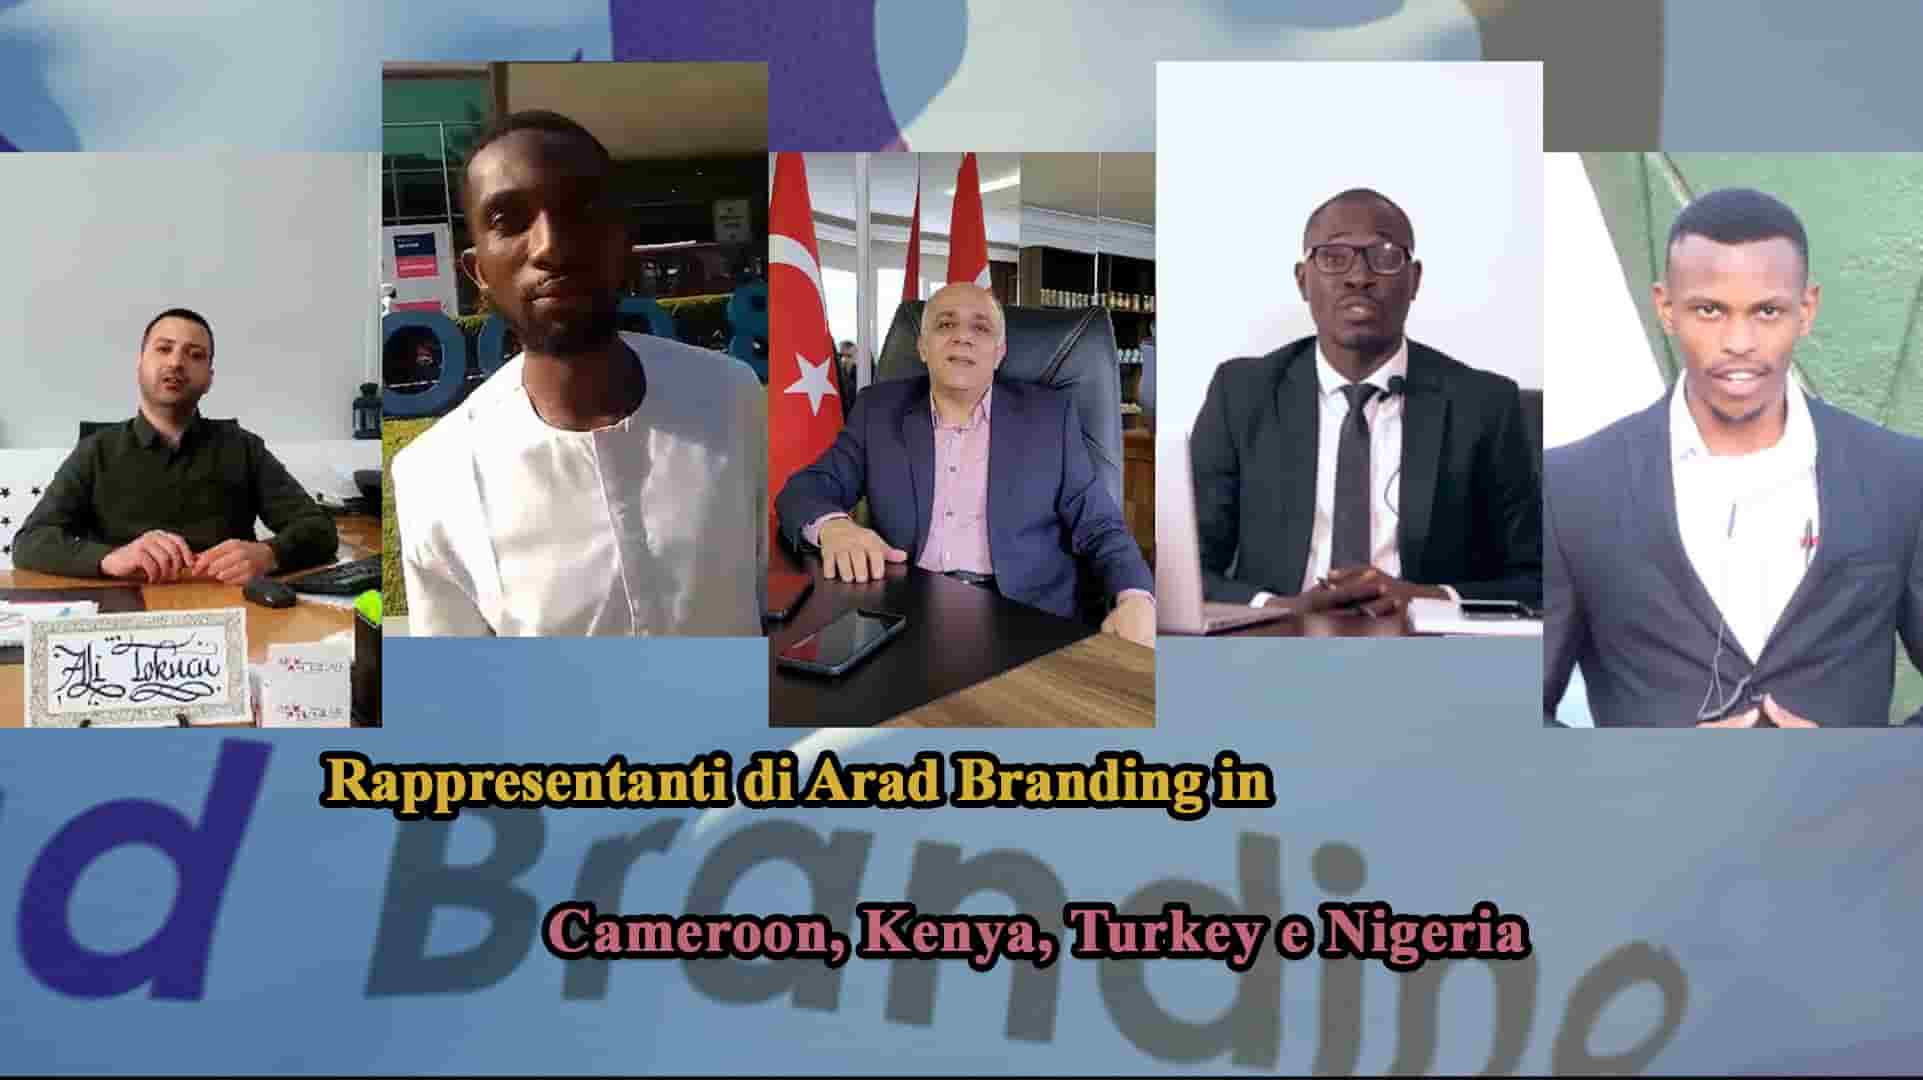 Apertura dell'ufficio Arad Branding in Cameroon + Attività dell'ufficio in Turkey + Nuovi rappresentanti in Nigeria, Turkey e Kenya + Resteremo in piedi fino all'ultimo respiro.